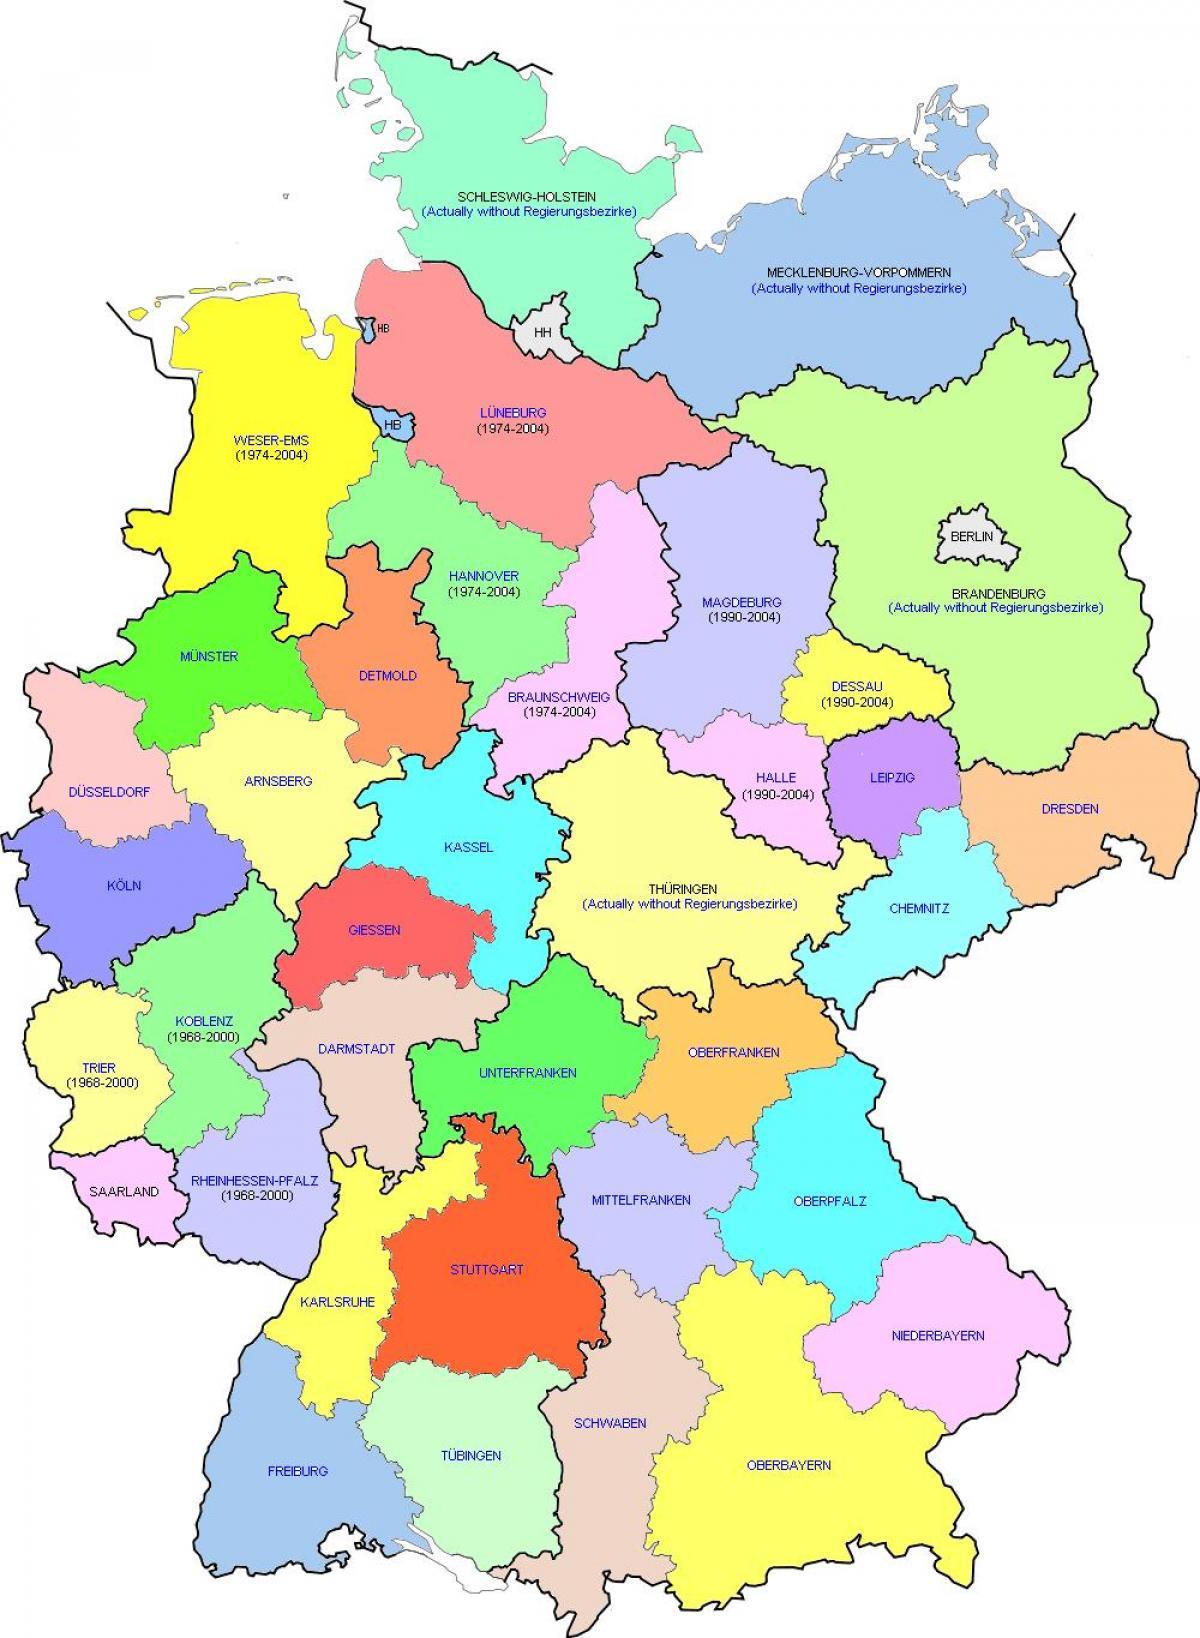 Prosta mapa Niemiec - Niemcy - prosta mapa (Europa Zachodnia - Europa)